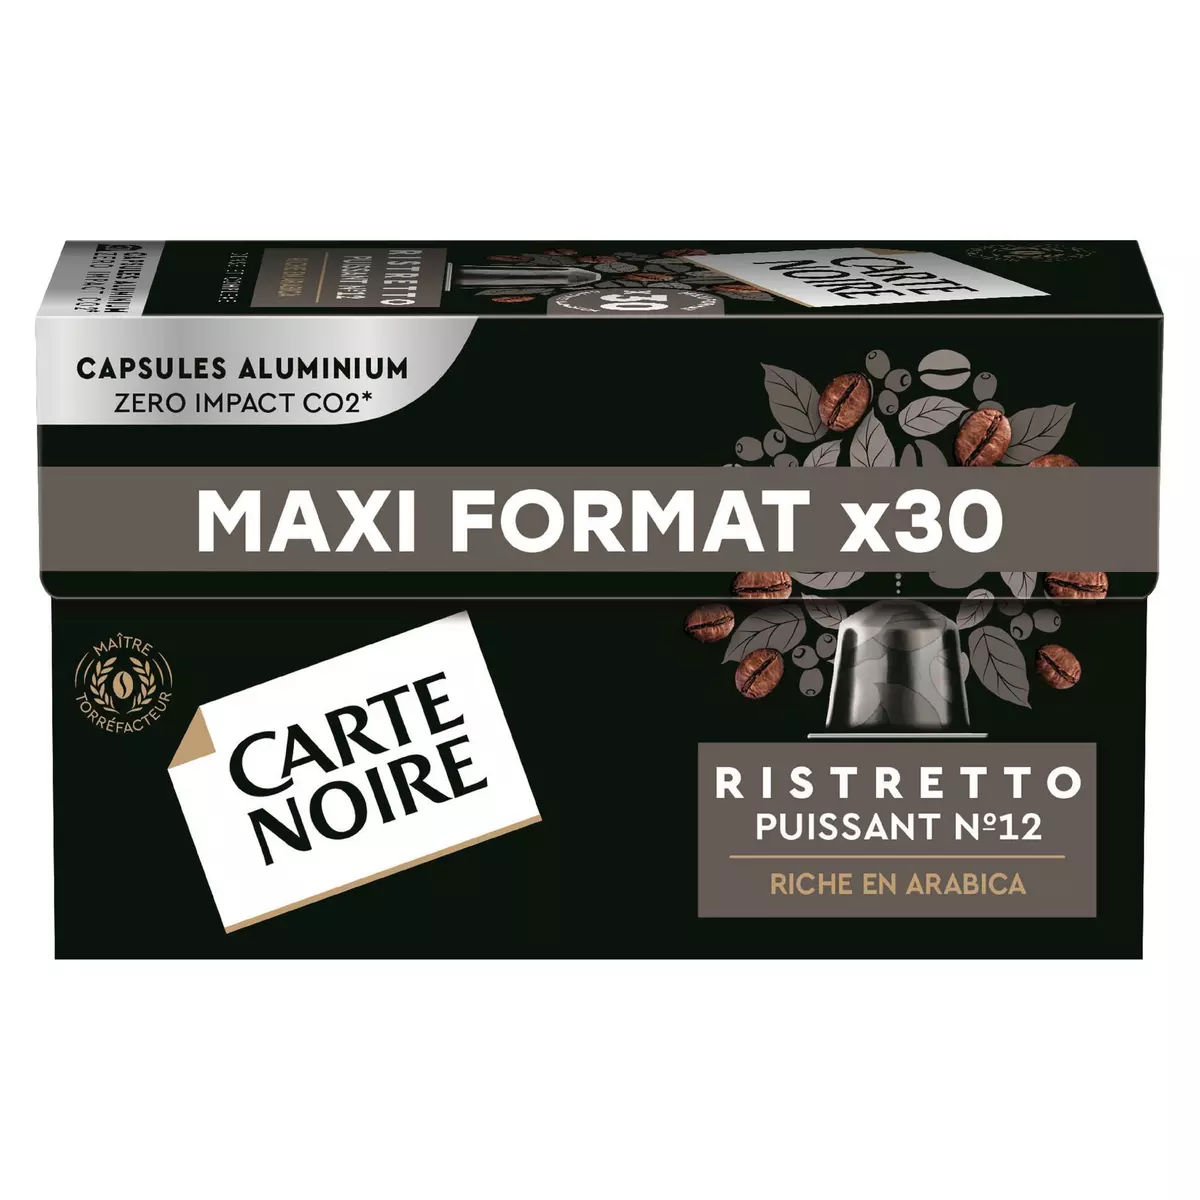 CARTE NOIRE Capsules de café ristretto puissant N°12 compatibles Nespresso 30 capsules 165g